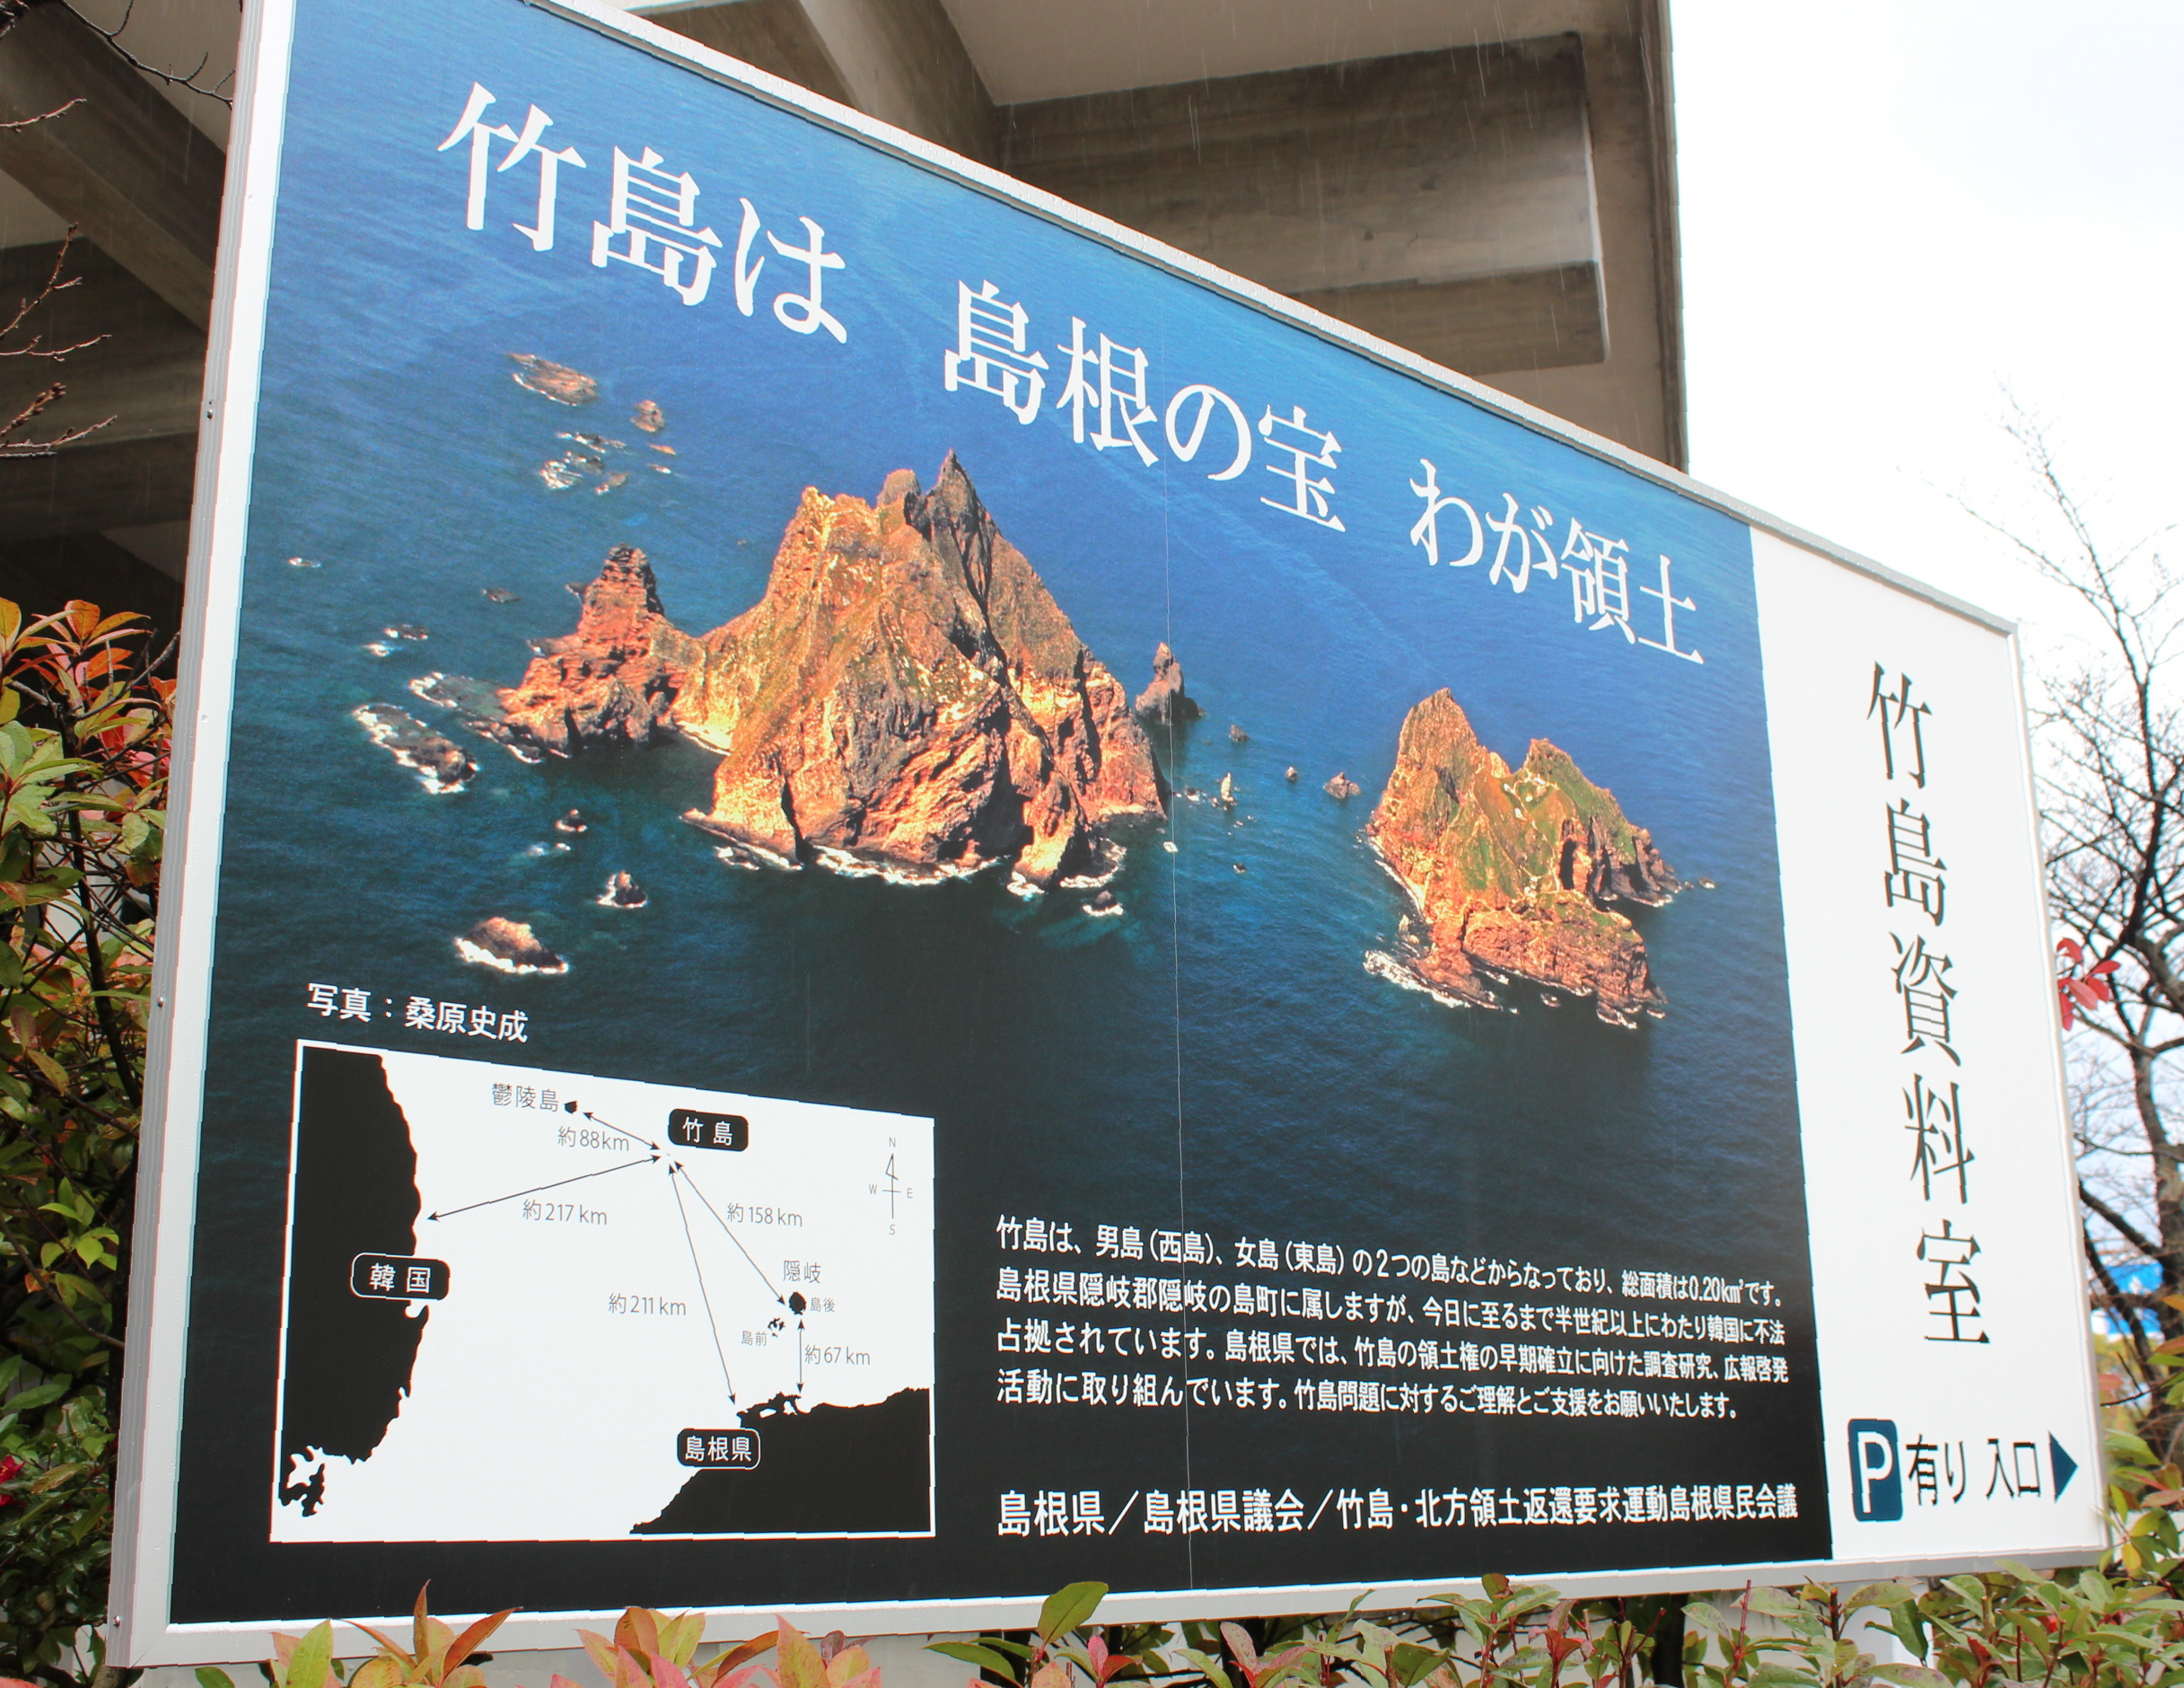 竹島を考える 歴史研究を重視せぬ日本 情報戦 を戦えるのか 産経ニュース